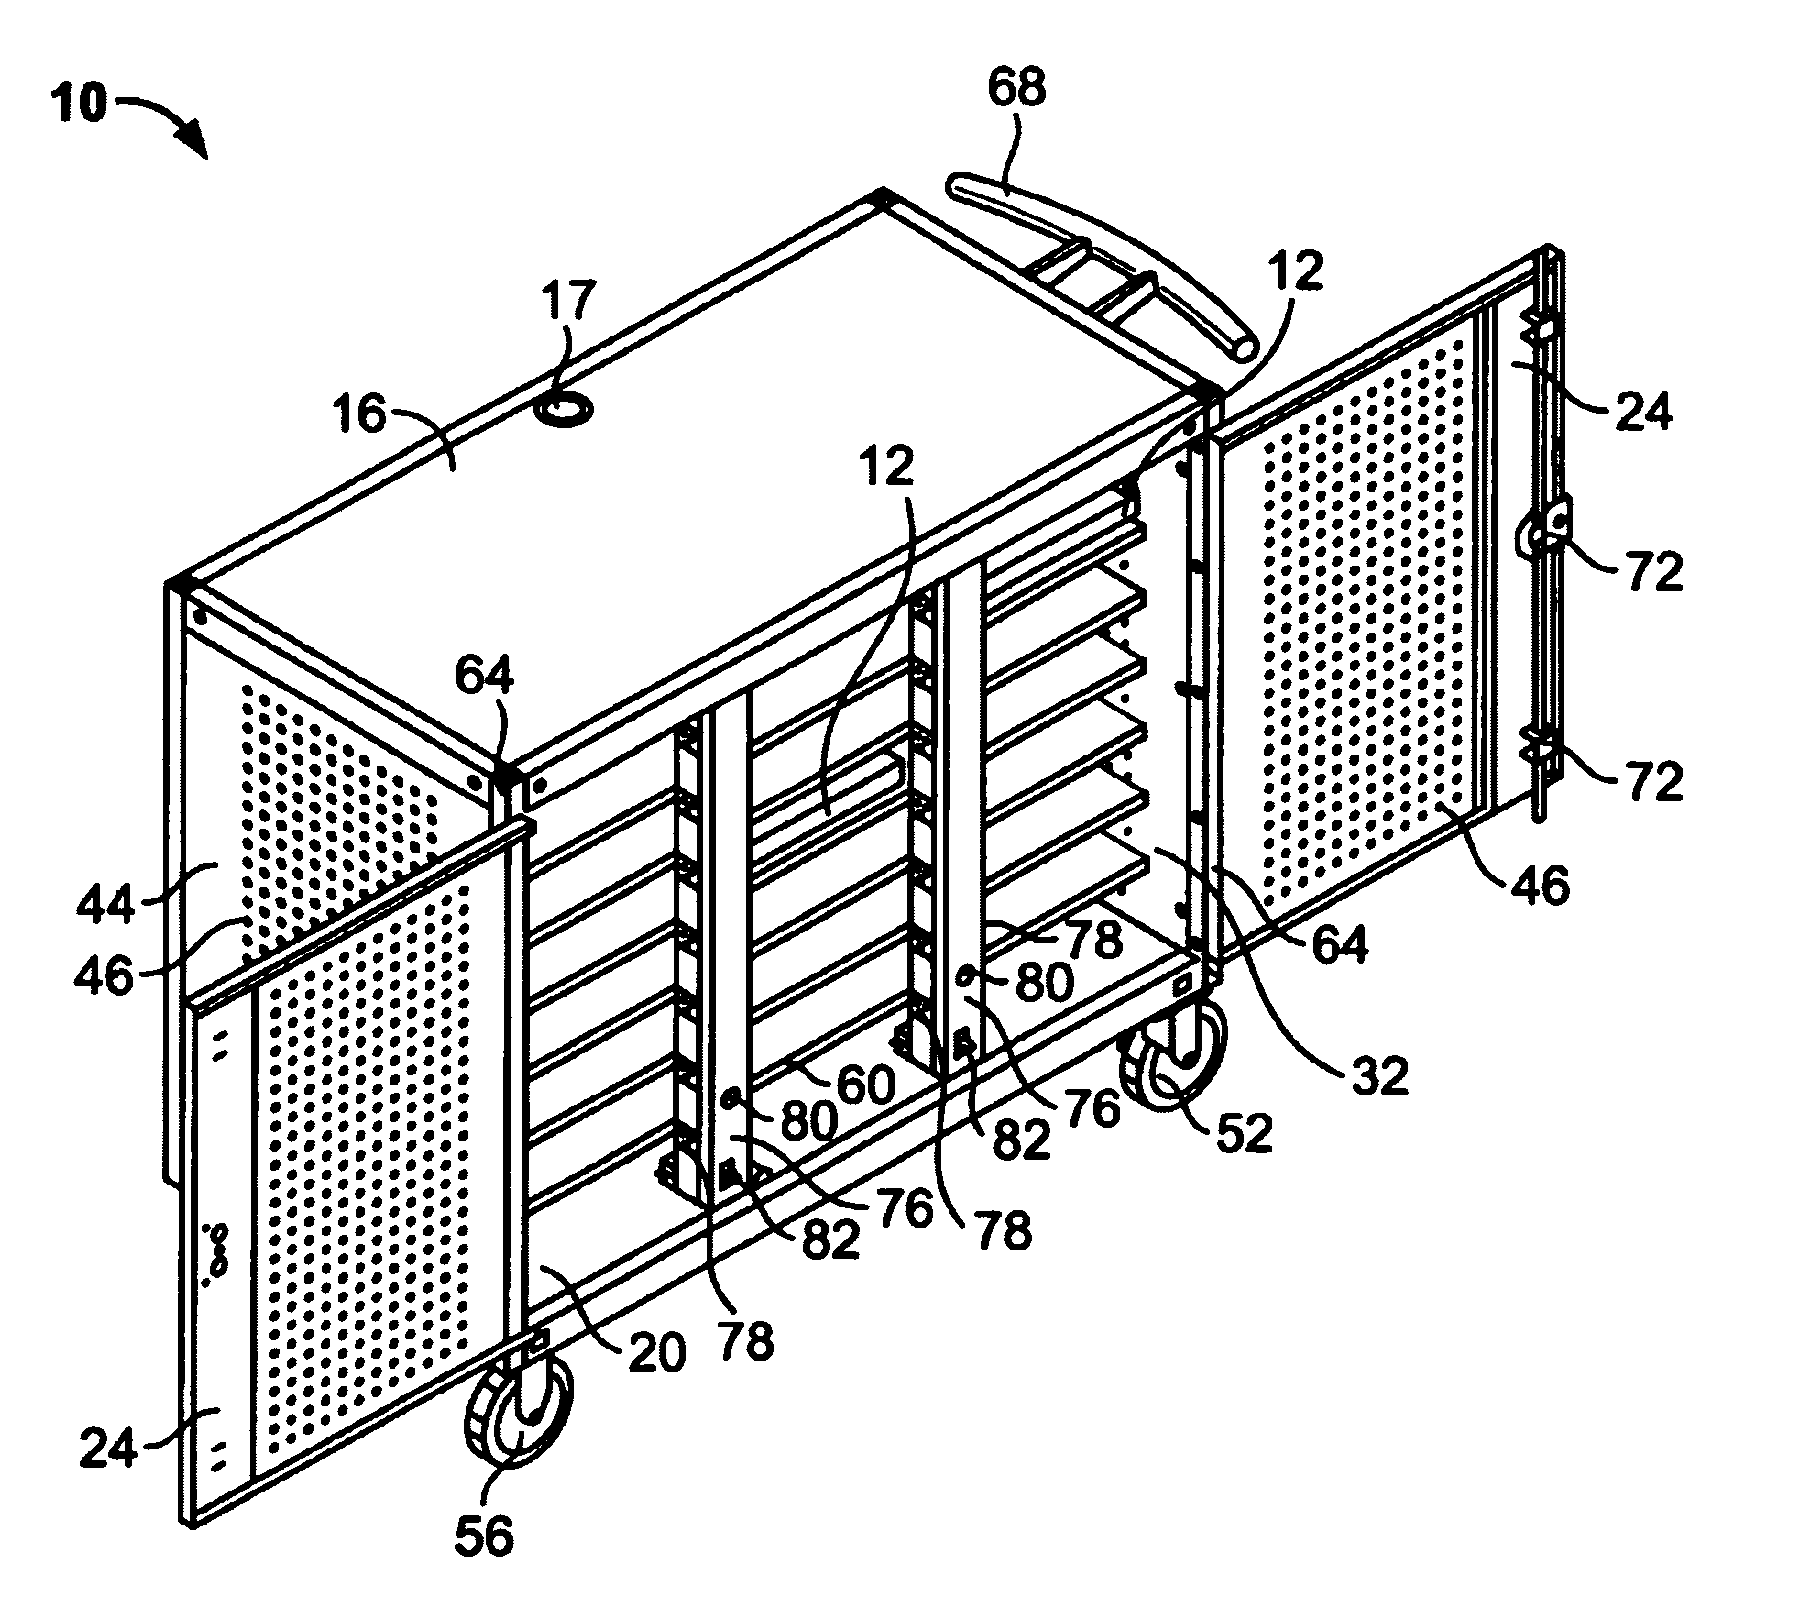 Computer storage cart